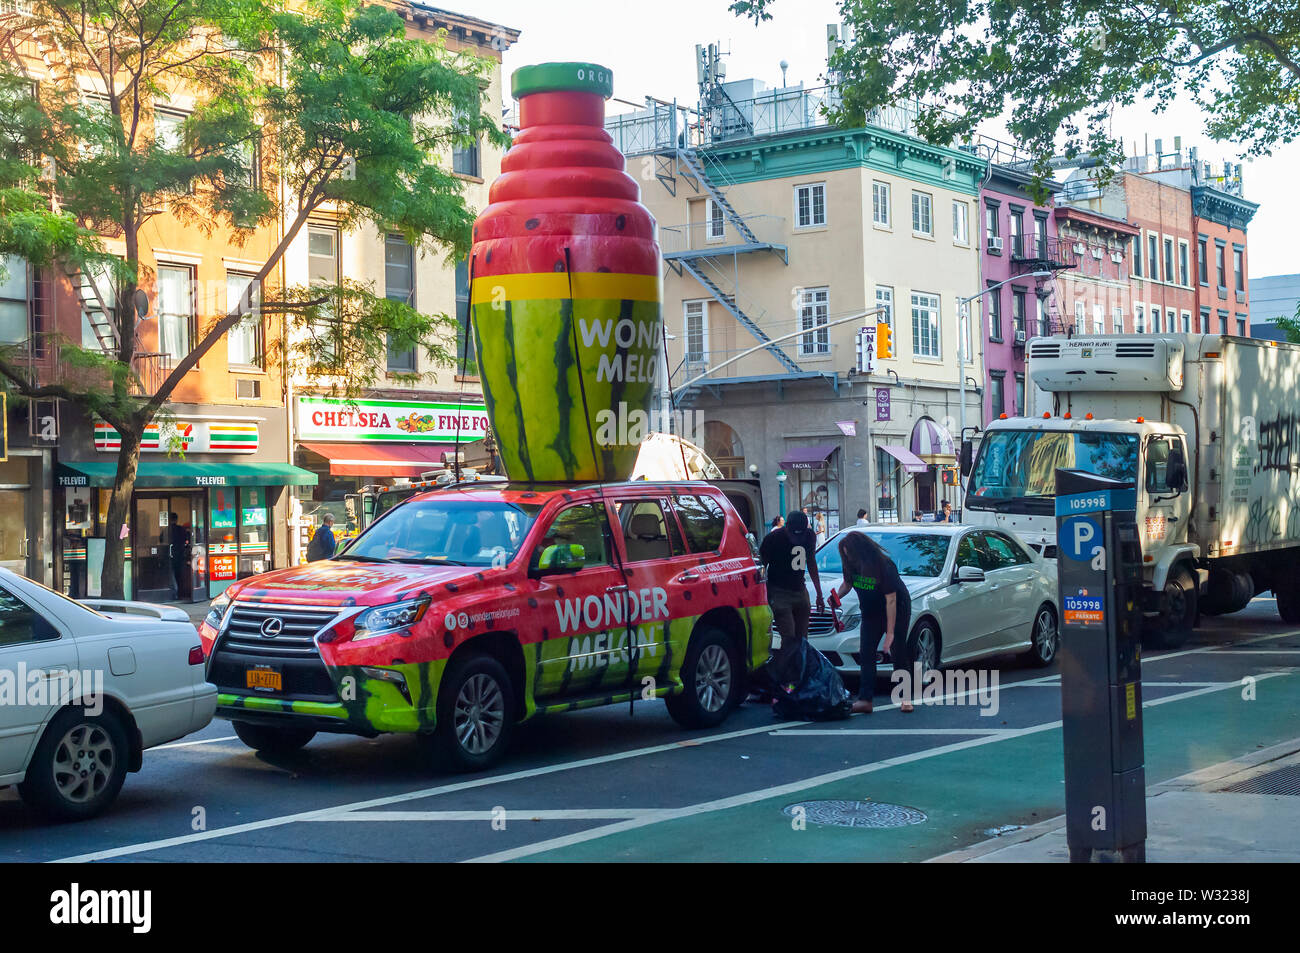 Un véhicule à un événement promotionnel pour le melon, pastèque étonnant jus, dans le quartier de Chelsea, New York le Mardi, Juillet 9, 2019. (© Richard B. Levine) Banque D'Images